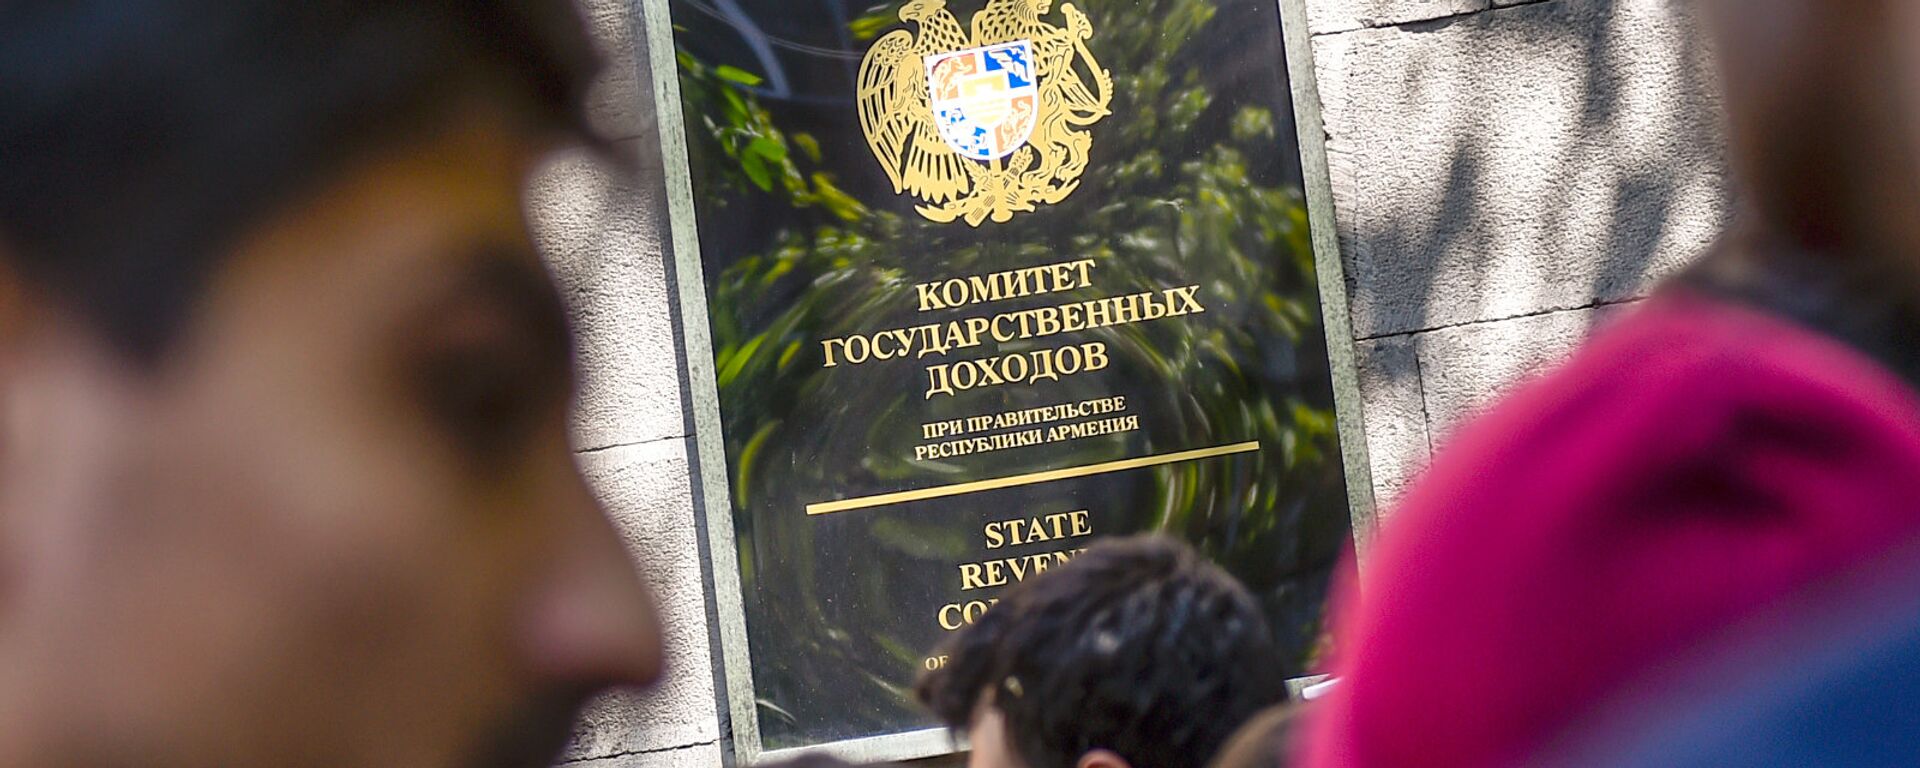 Активисты заблокировали вход в здание Комитета гос.доходов (17 апреля 2018). Ереван - Sputnik Армения, 1920, 01.12.2021